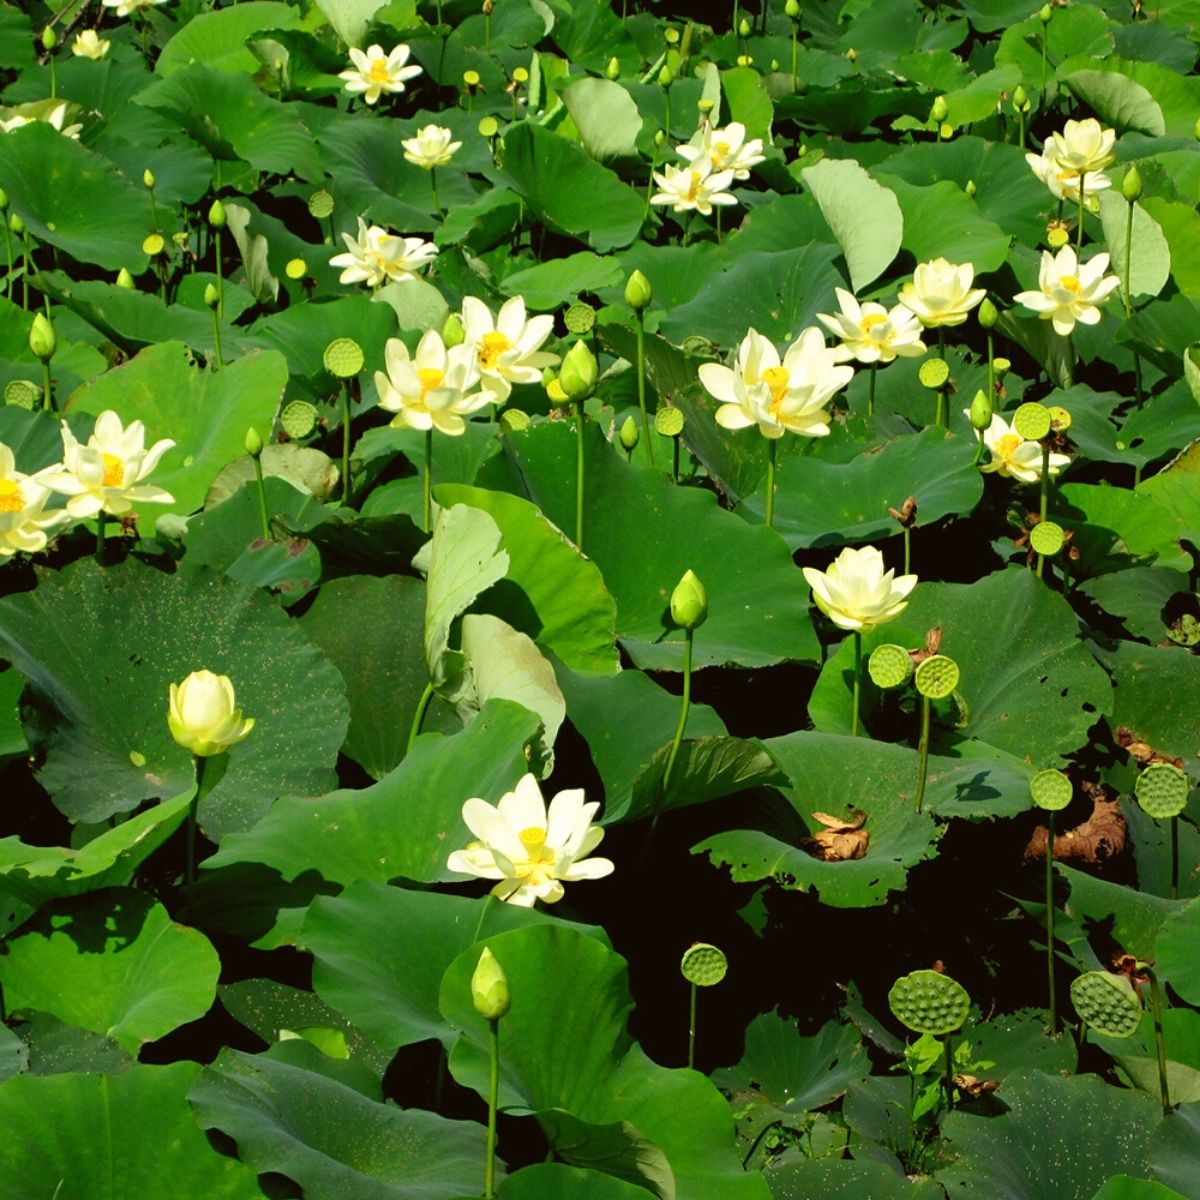 Pond full of Lotus flowers on Thursd